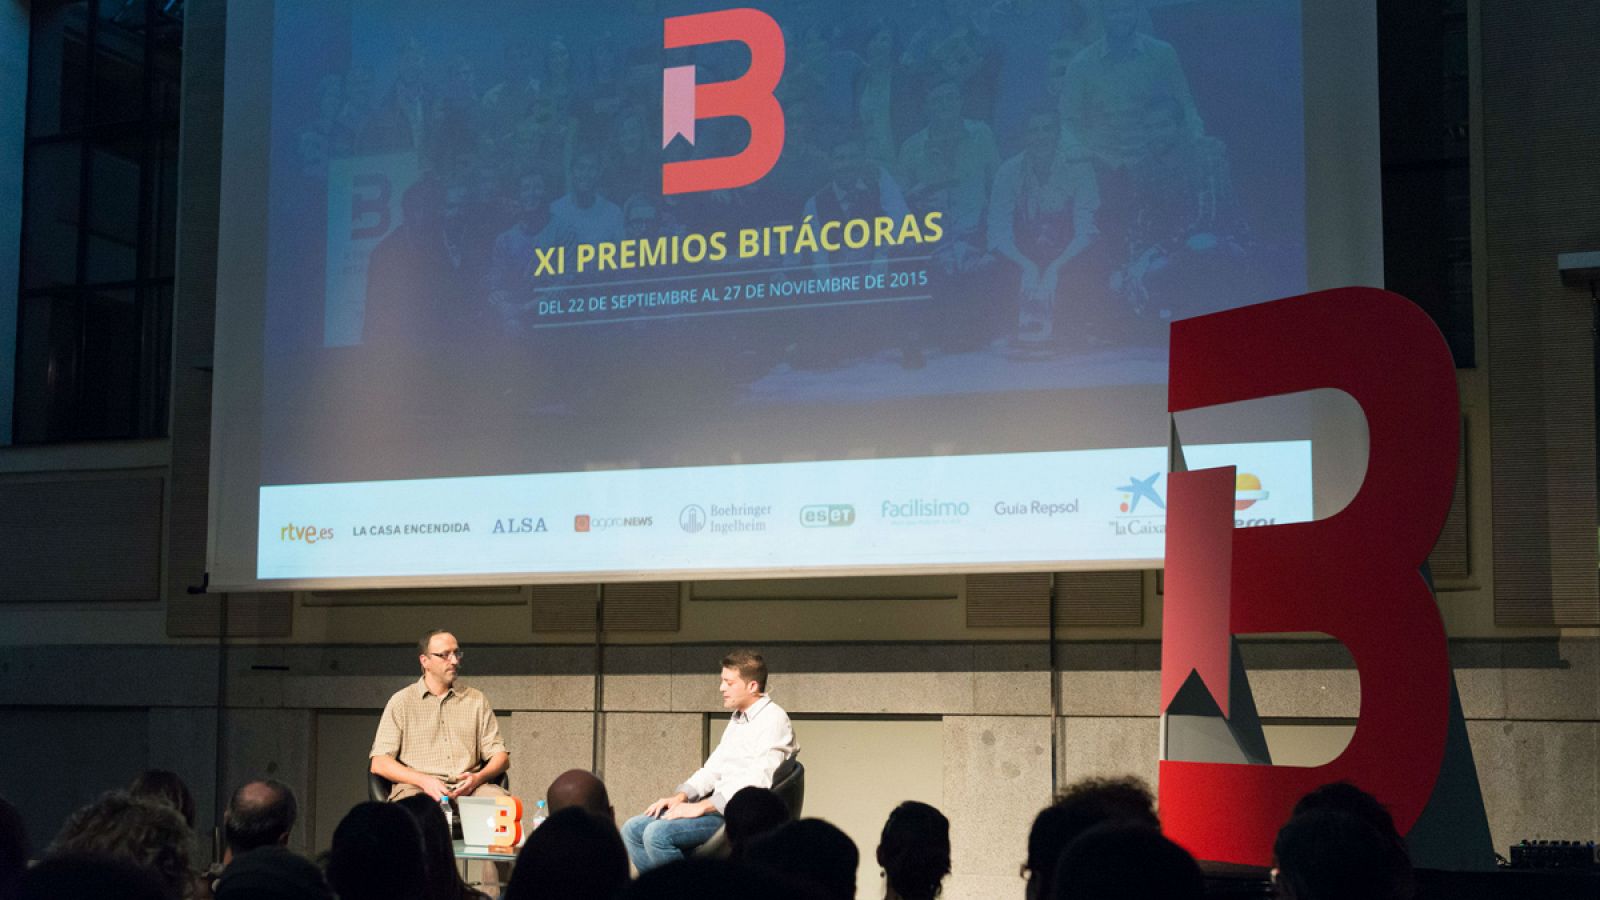 Bitacoras.com acaba de poner en marcha la undécima edición de sus ¿Premios Bitácoras¿, entre cuyas principales novedades destaca la redefinición de muchas de las 20 categorías que conforman el certamen, así como la inclusión de algunas nuevas.